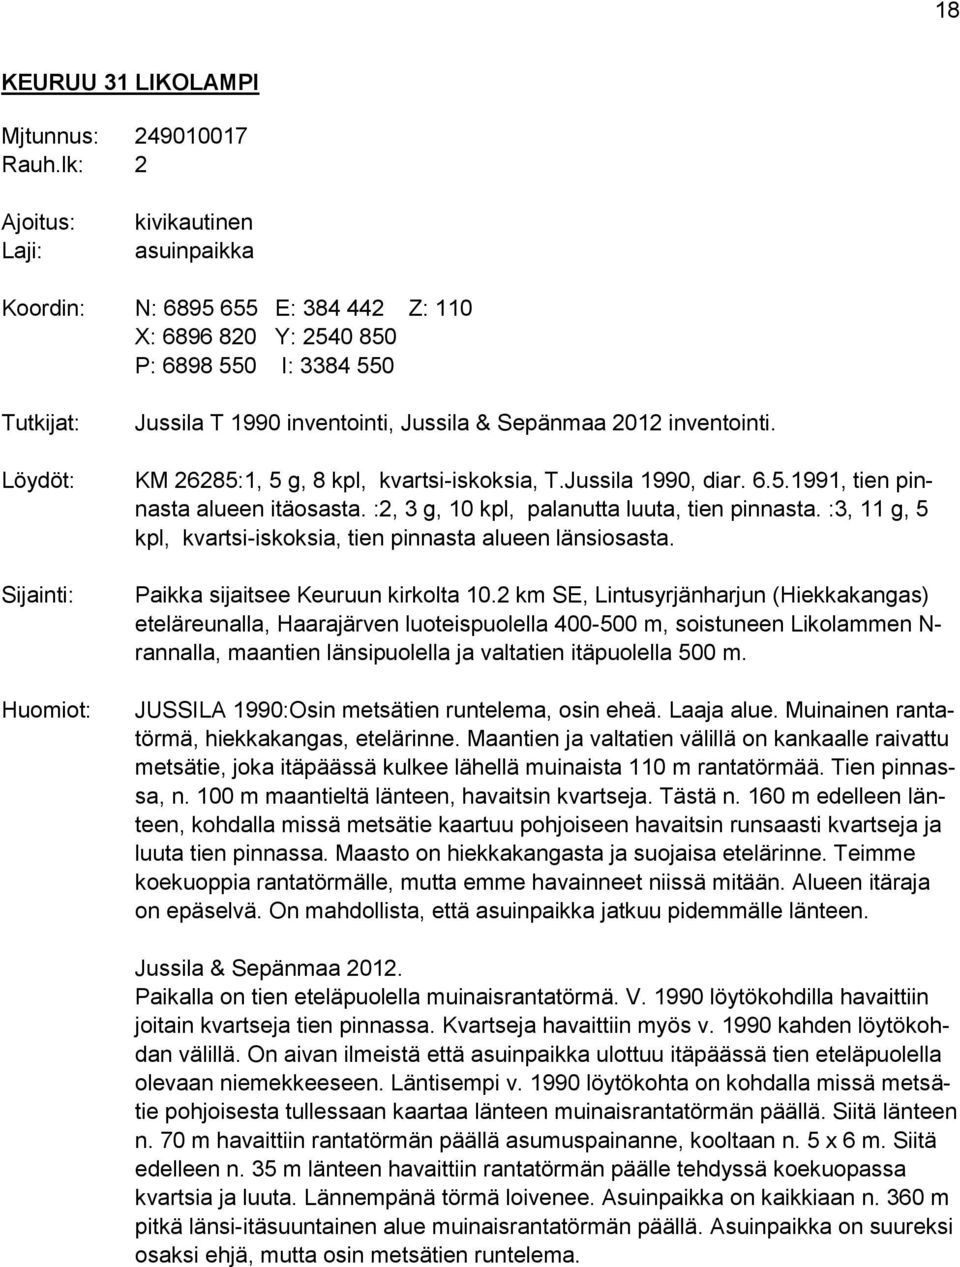 Jussila & Sepänmaa 2012 inventointi. KM 26285:1, 5 g, 8 kpl, kvartsi-iskoksia, T.Jussila 1990, diar. 6.5.1991, tien pinnasta alueen itäosasta. :2, 3 g, 10 kpl, palanutta luuta, tien pinnasta.